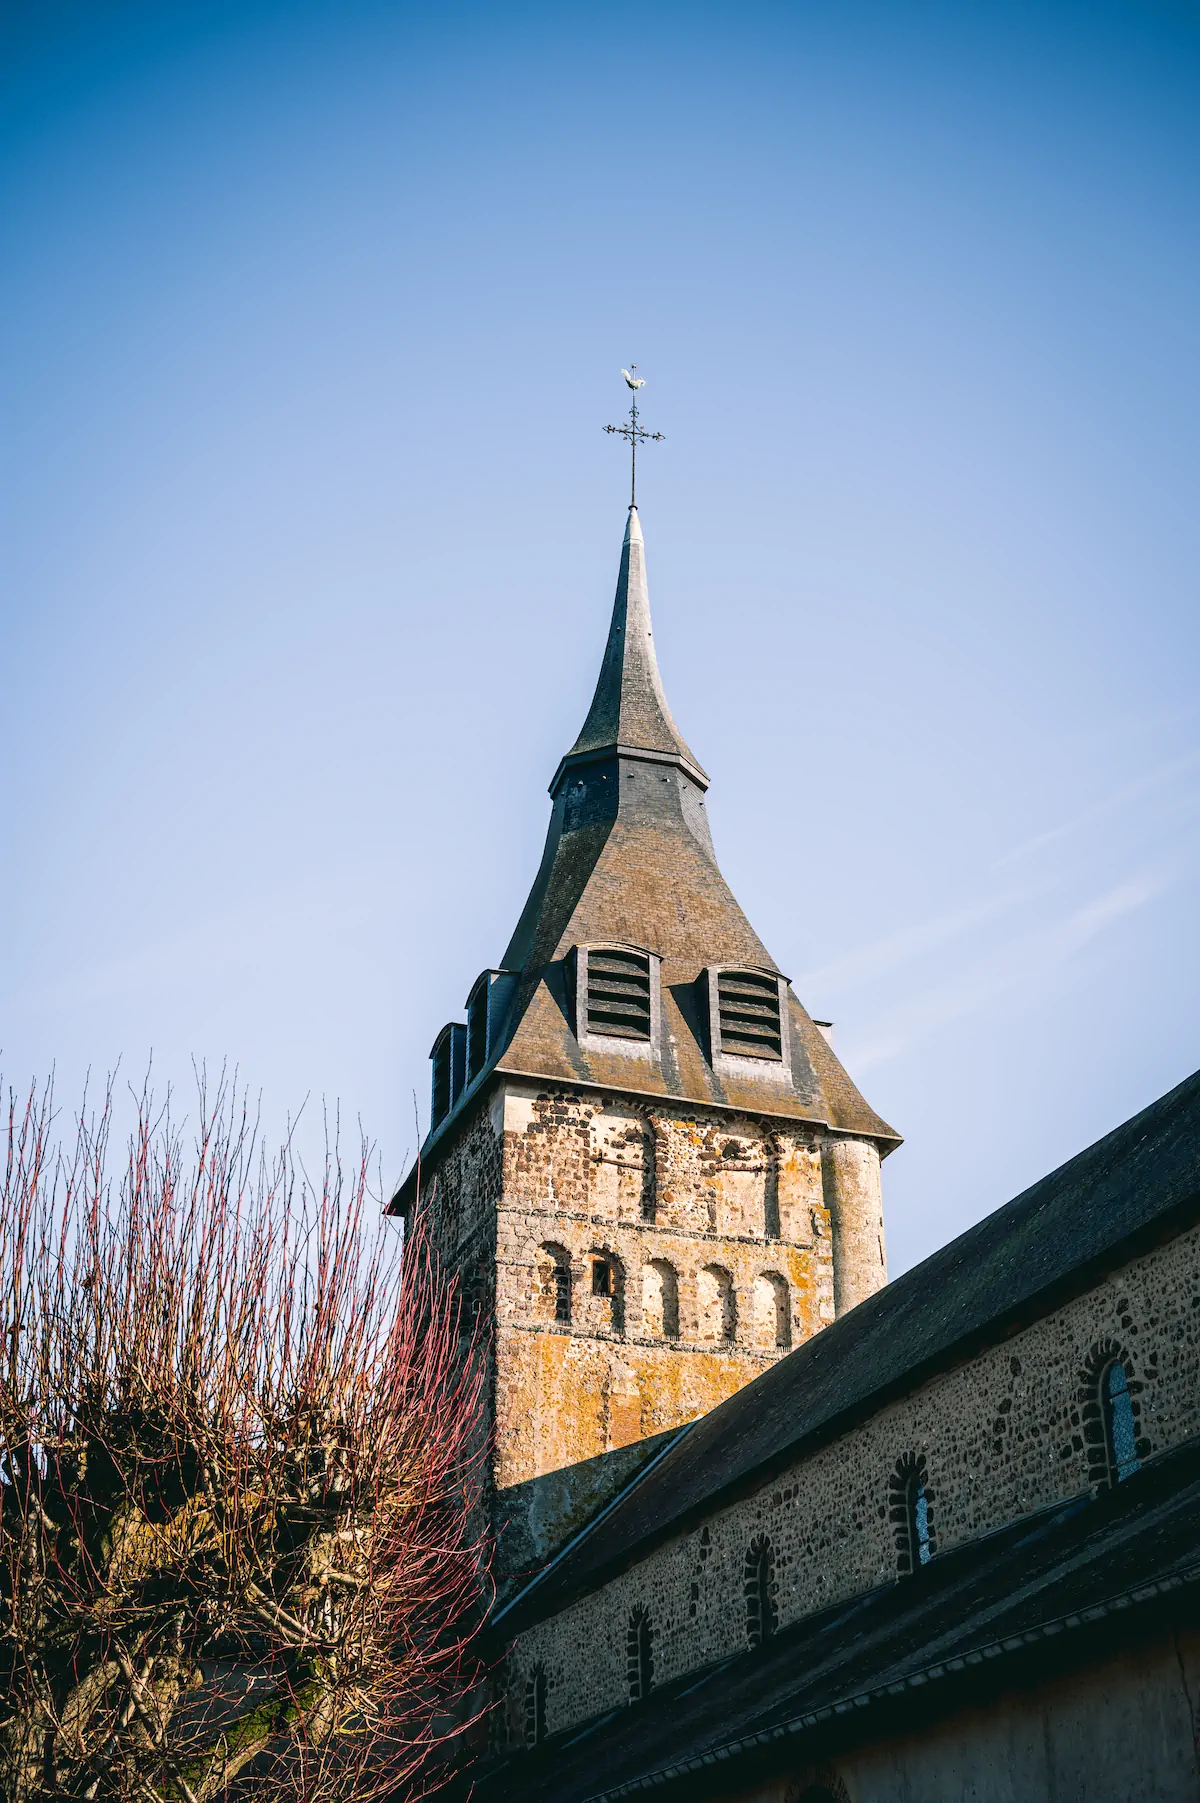 Clocher de l'église en pierre avec une flèche contre un ciel bleu clair.